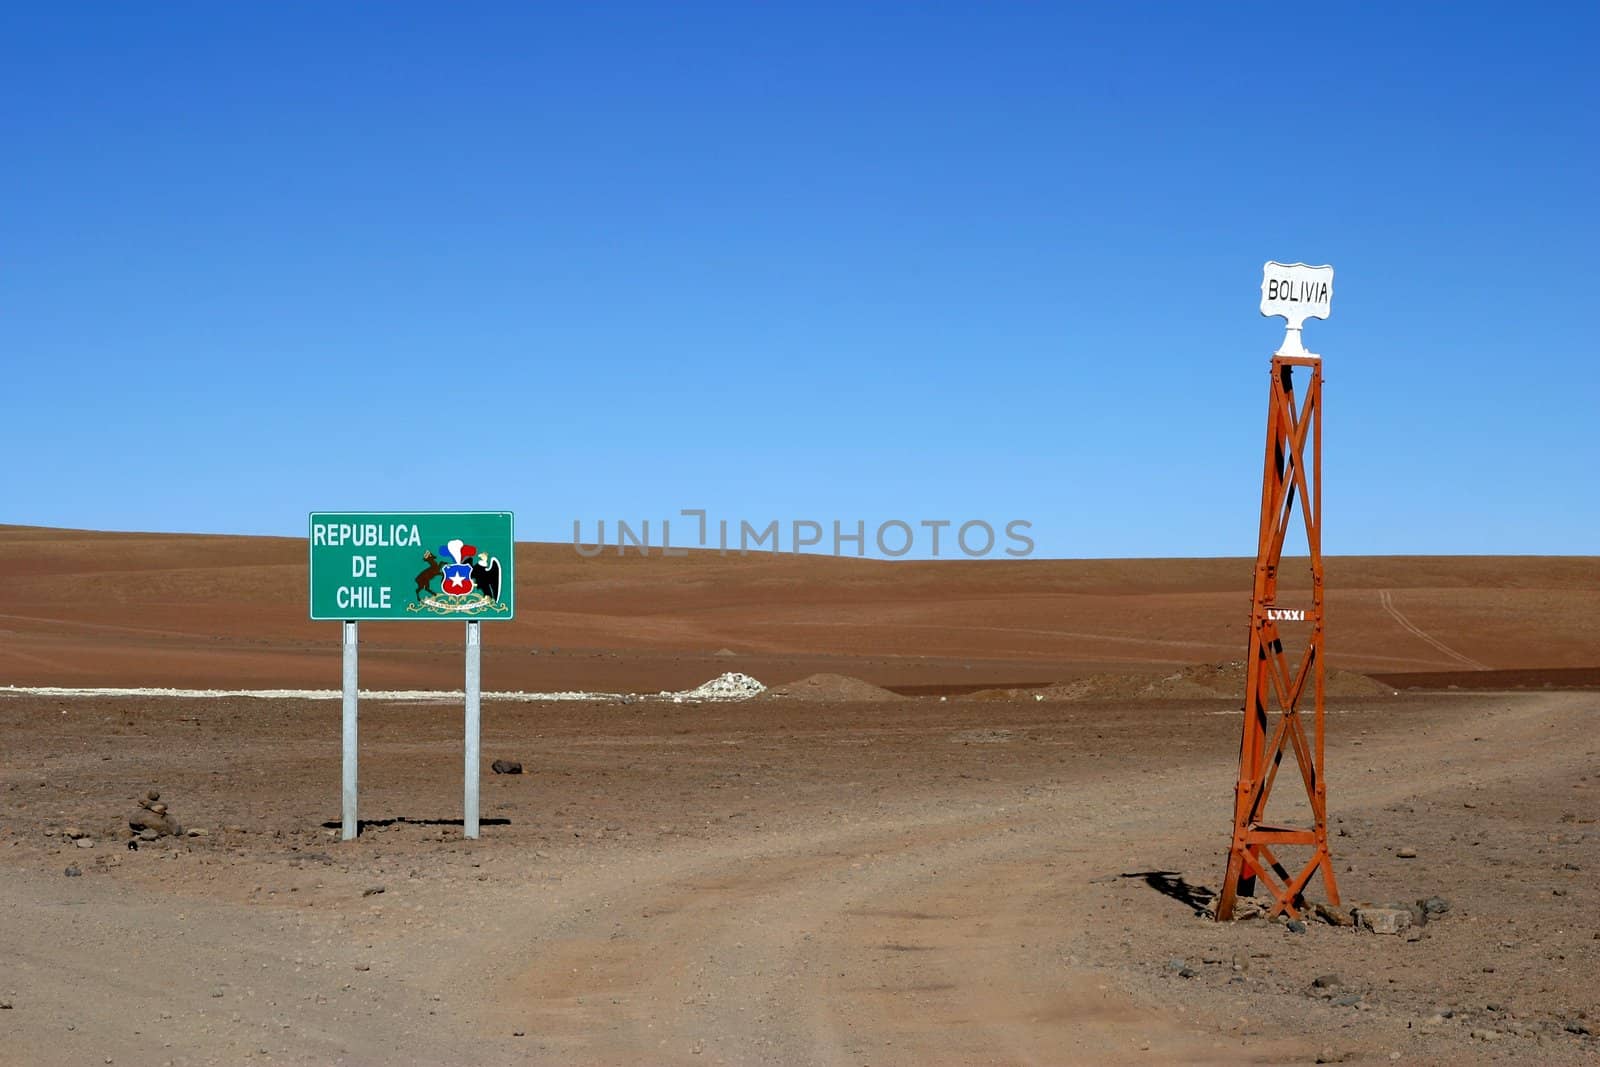 Bolivia Chile border by Marko5